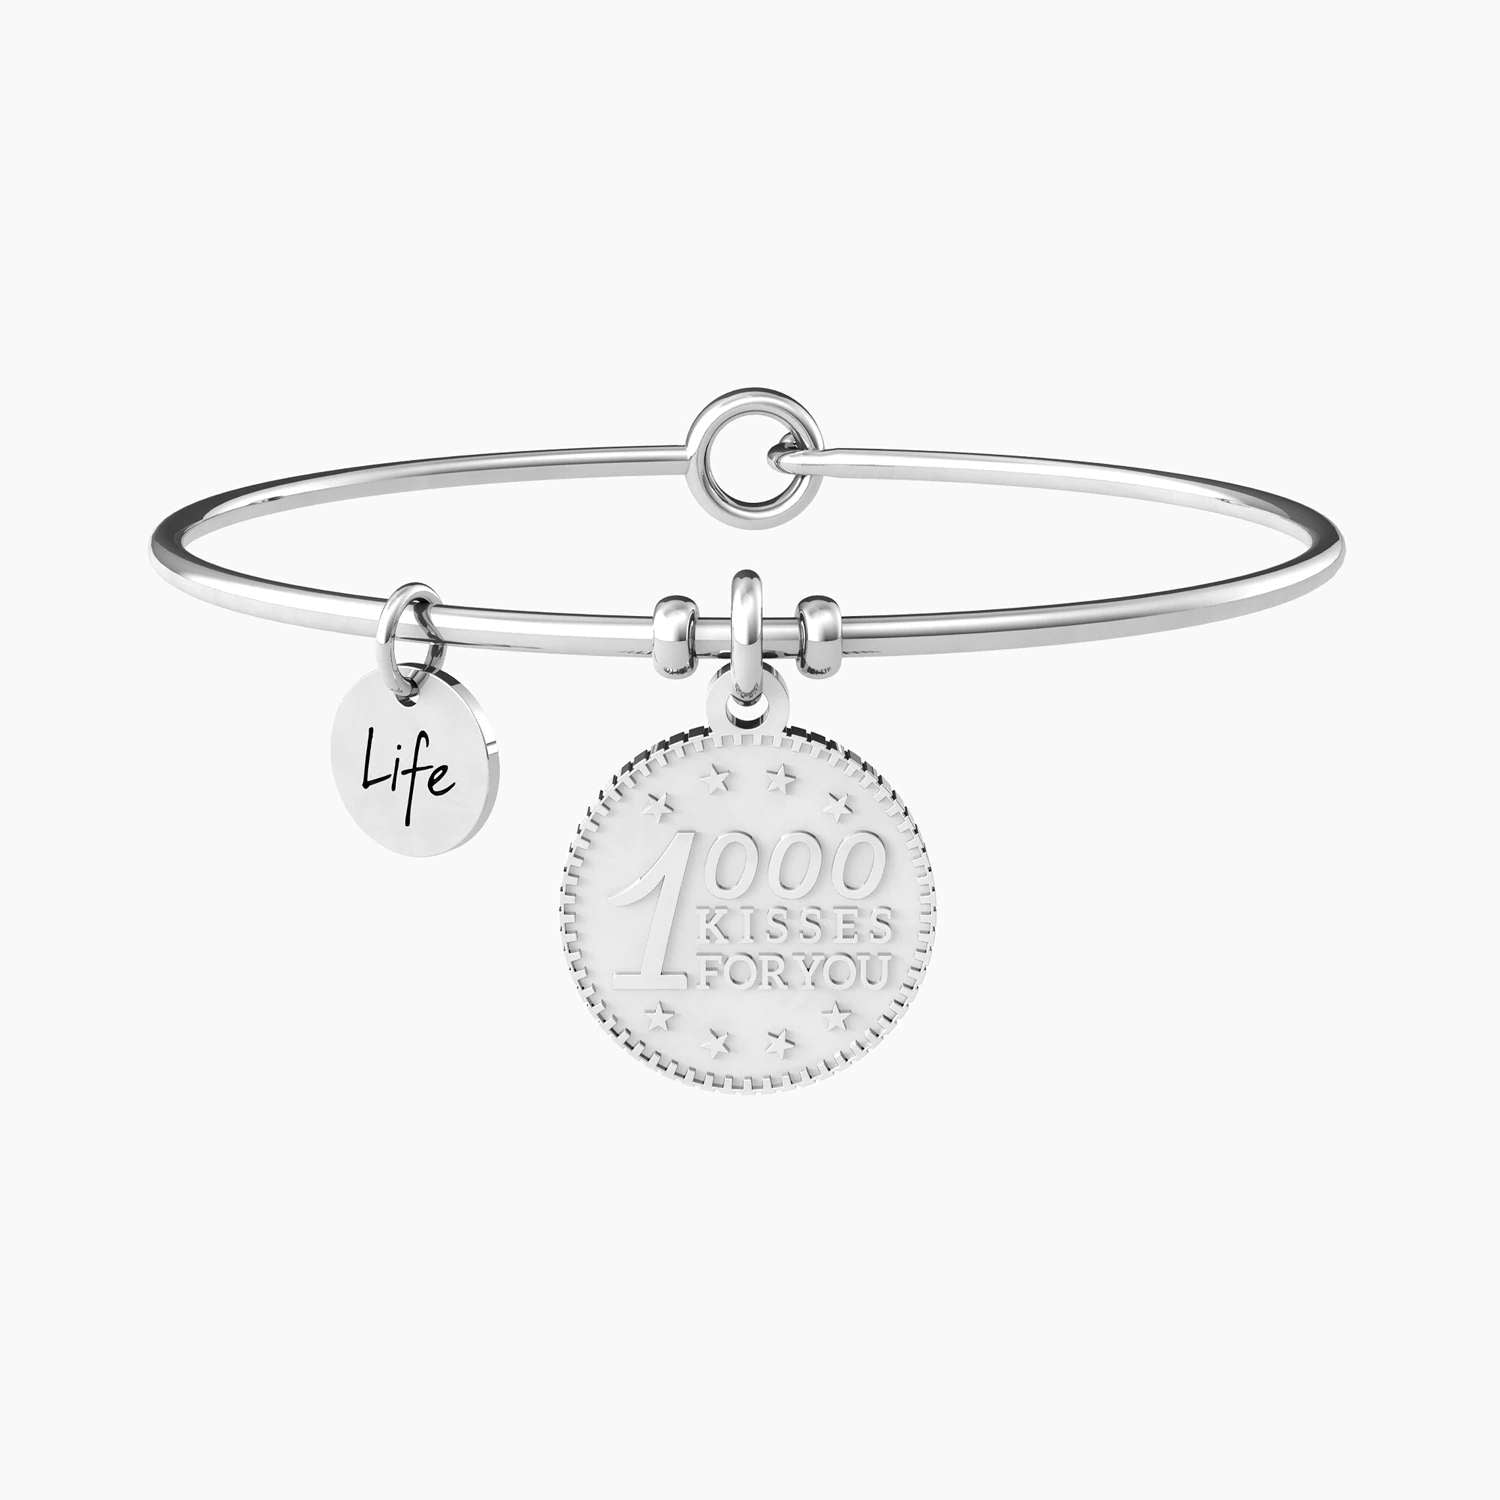 Bracelet femme collection Love - 1000 Bisous pour toi - 731991